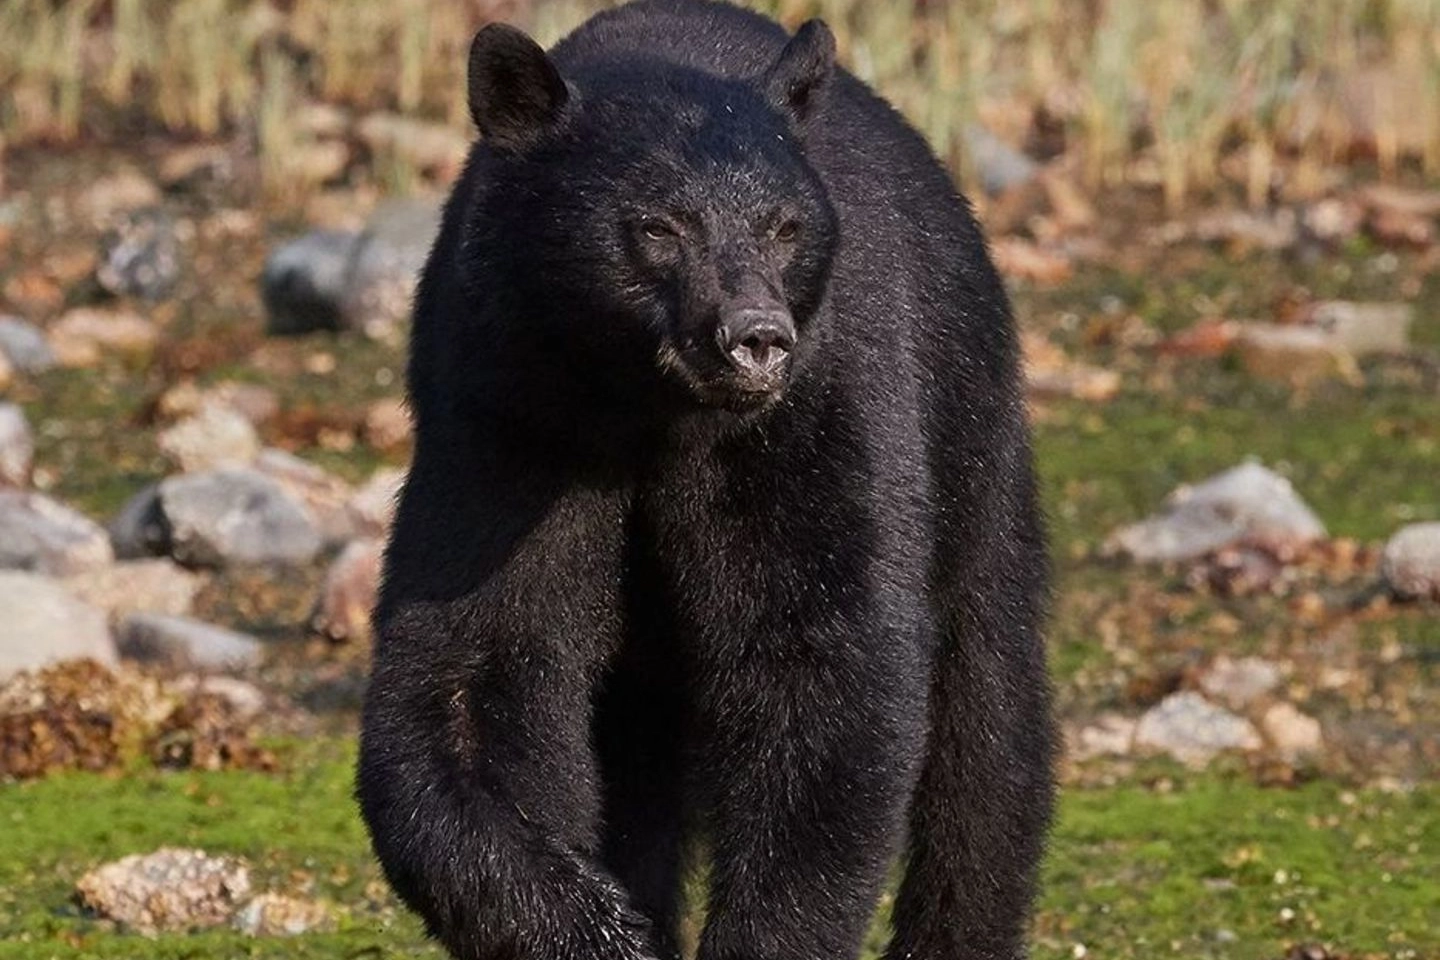 Un orso del Canada fotografato dal biologo e documentarista Michel Giaccaglia